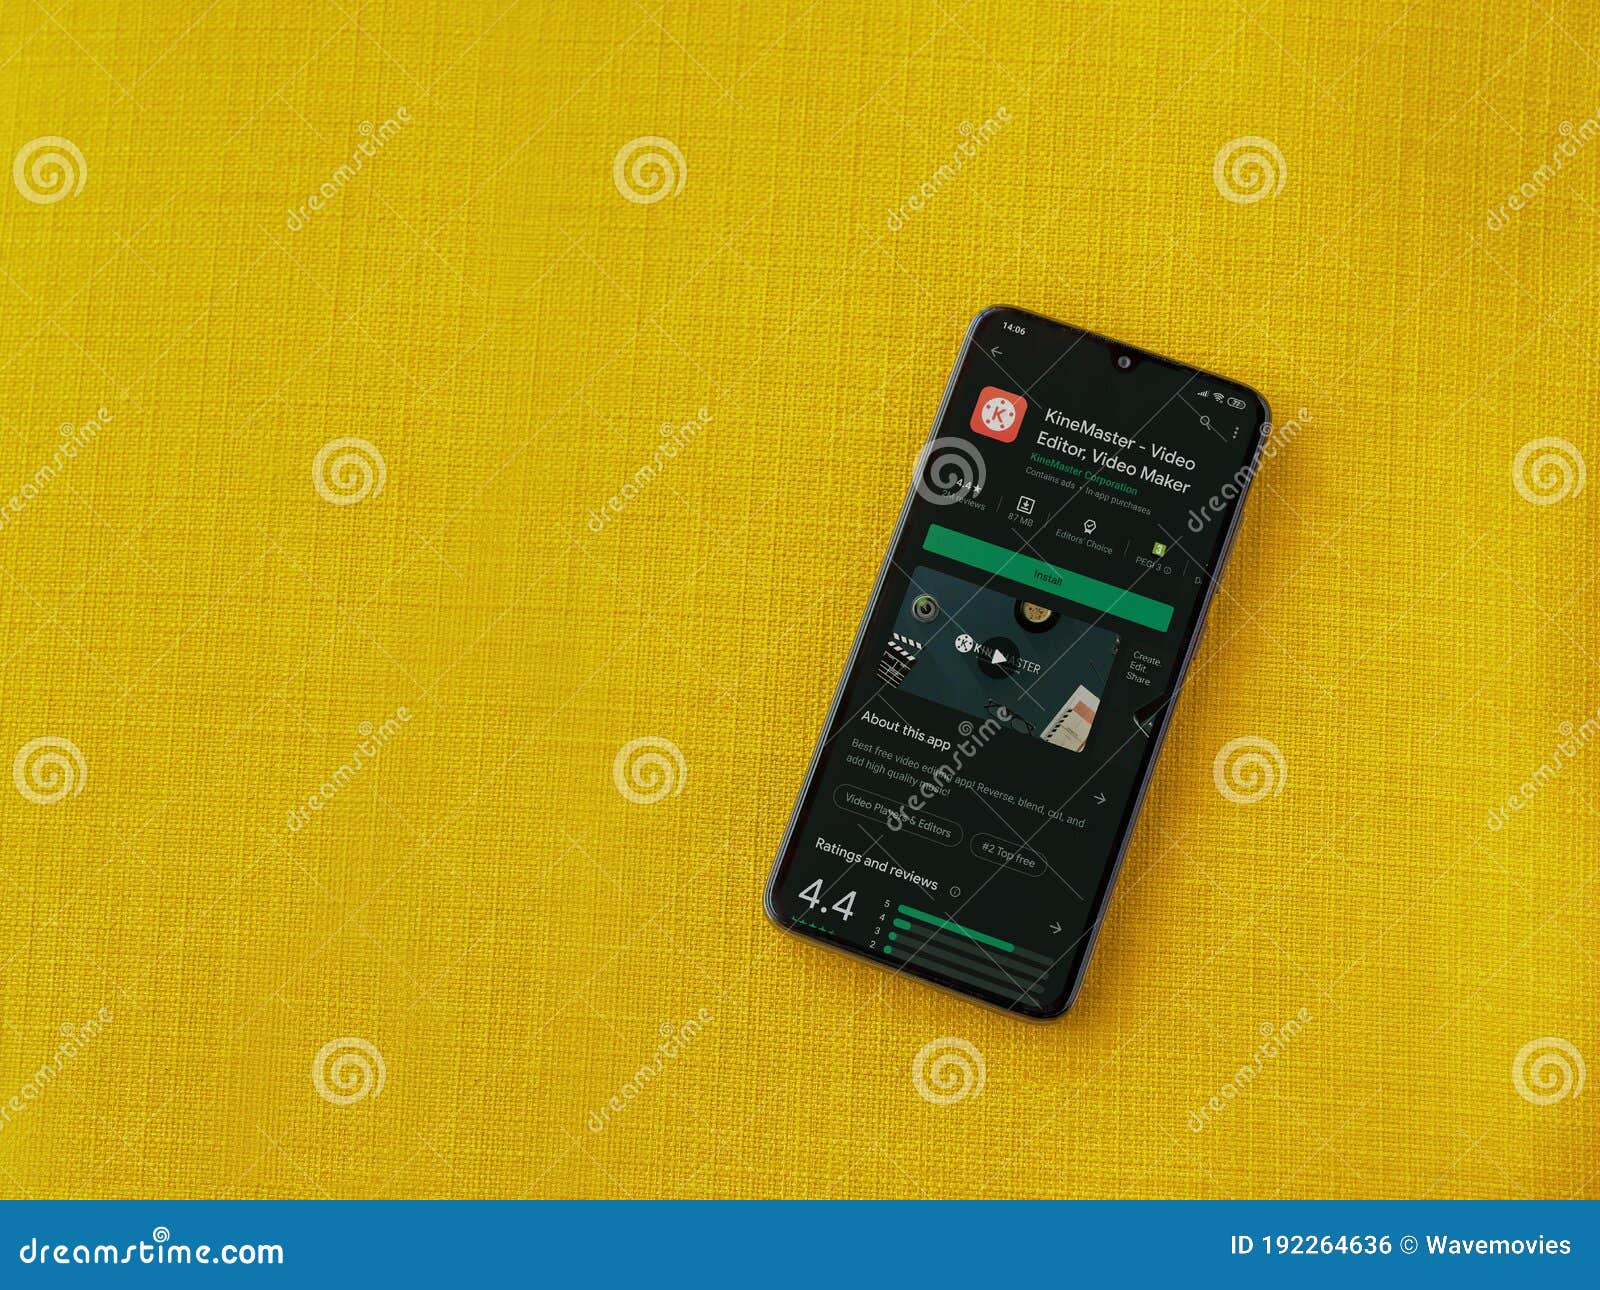 KineMaster là một ứng dụng chỉnh sửa video chuyên nghiệp, đem lại cho bạn những trải nghiệm chỉnh sửa video hoàn hảo. Với rất nhiều tính năng độc đáo và nhiều tùy chọn cho phép bạn tạo ra những video đáp ứng được nhu cầu sáng tạo của mình.